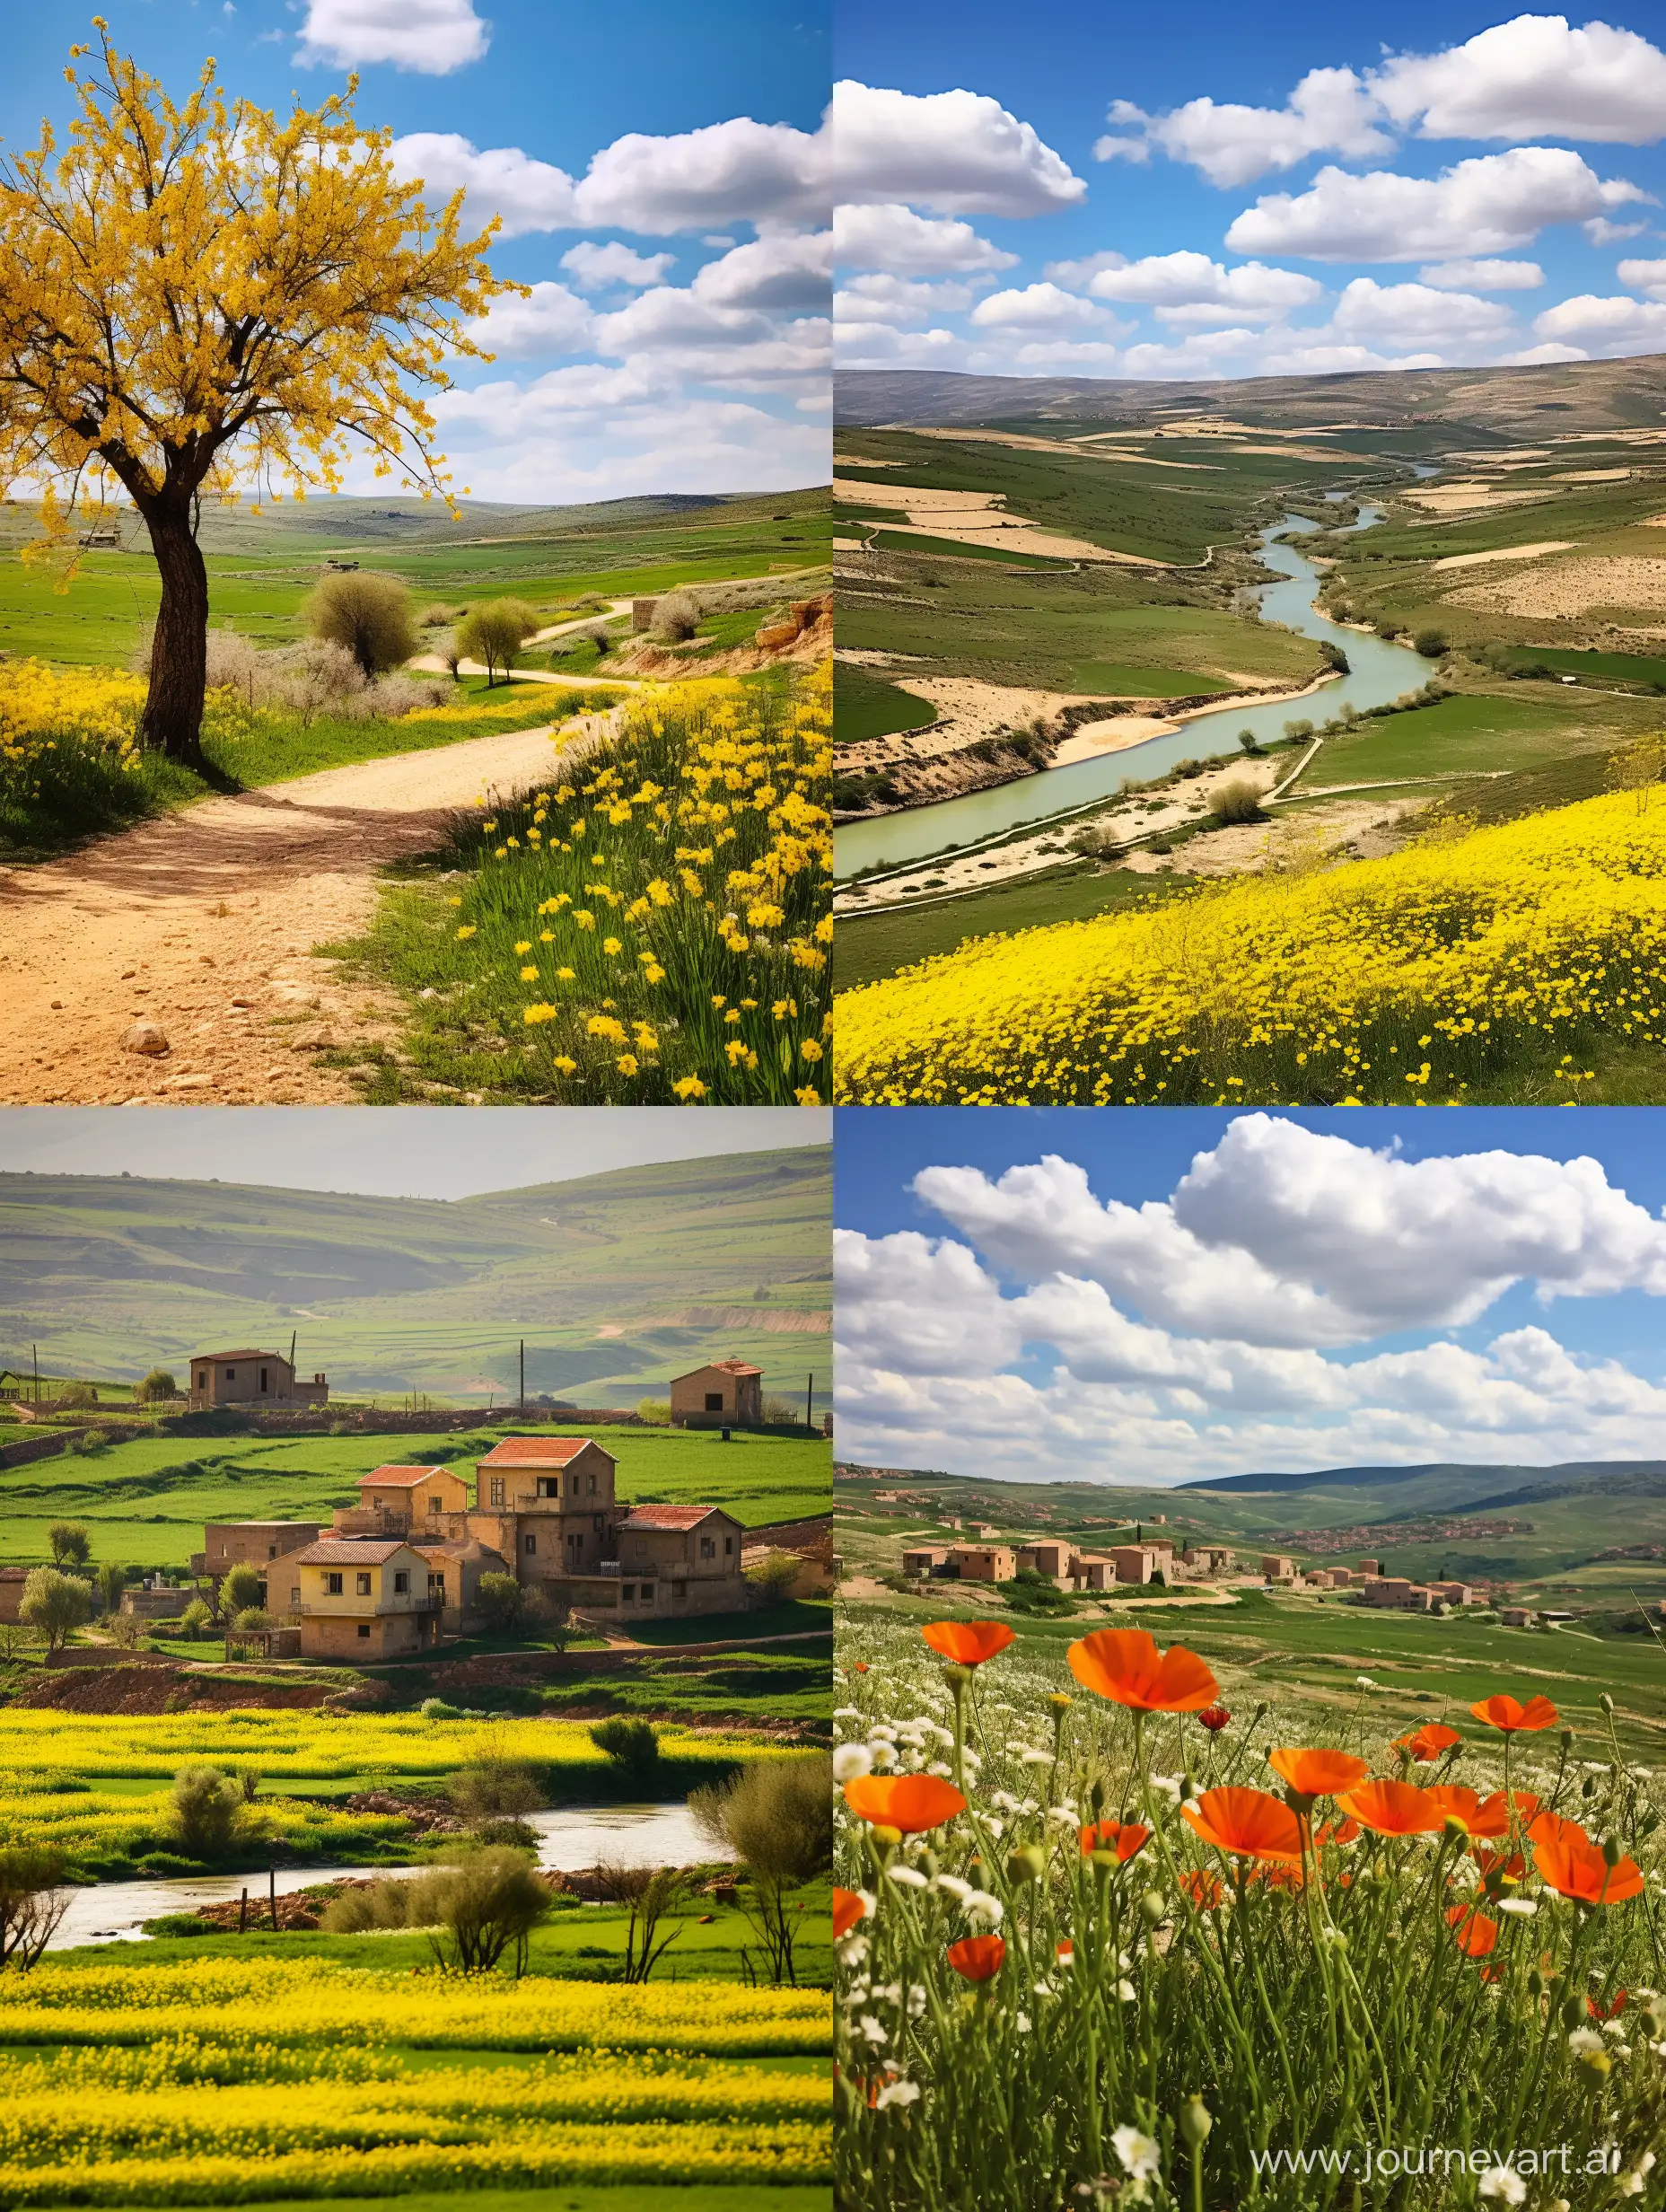 الريف الفلسطيني حيث تتجلى السهول الخضراء الممتدة والحقول الملونة بزهور الربيع. يتخللها أنهار وعيون تضفي جمالاً طبيعياً، وتتناغم مع الزراعة المتنوعة، وخاصة الزيتون، الذي يمثل جزءاً لا يتجزأ من هويته. تتناغم أشجار الزيتون مع البساتين المتناثرة، ويزين المشهد بيوت ريفية تعبر عن التراث والبساطة، فيما يعكس هدوء الحياة في الريف الفلسطيني توازناً رائعاً بين الطبيعة والثقافة